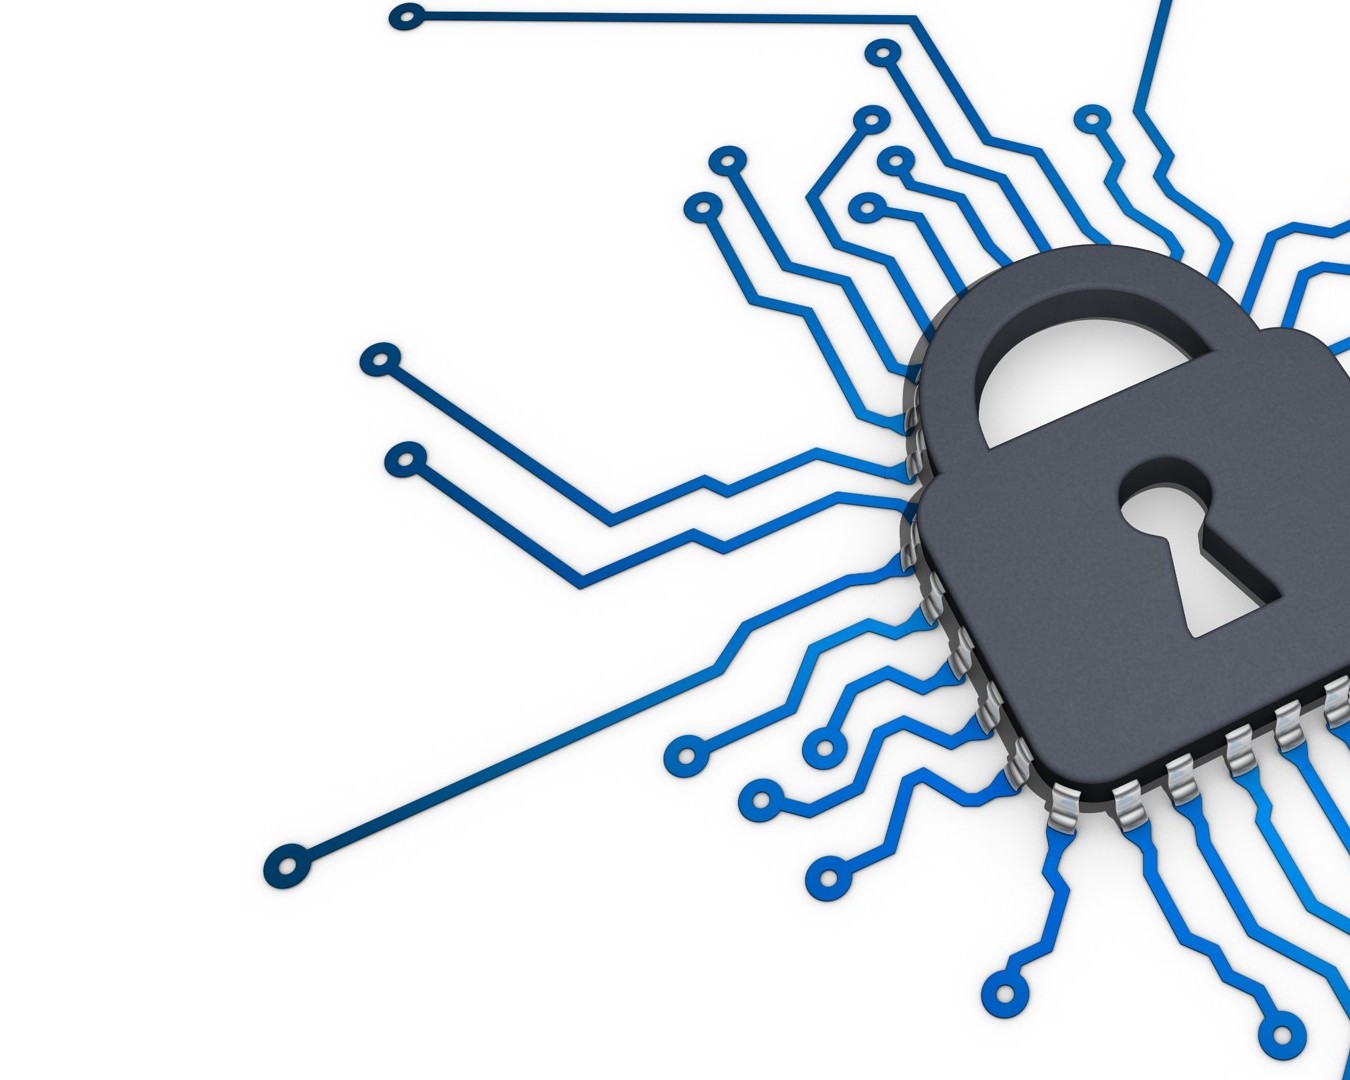 Cyber Security: Quanto costa alle aziende l’insicurezza?